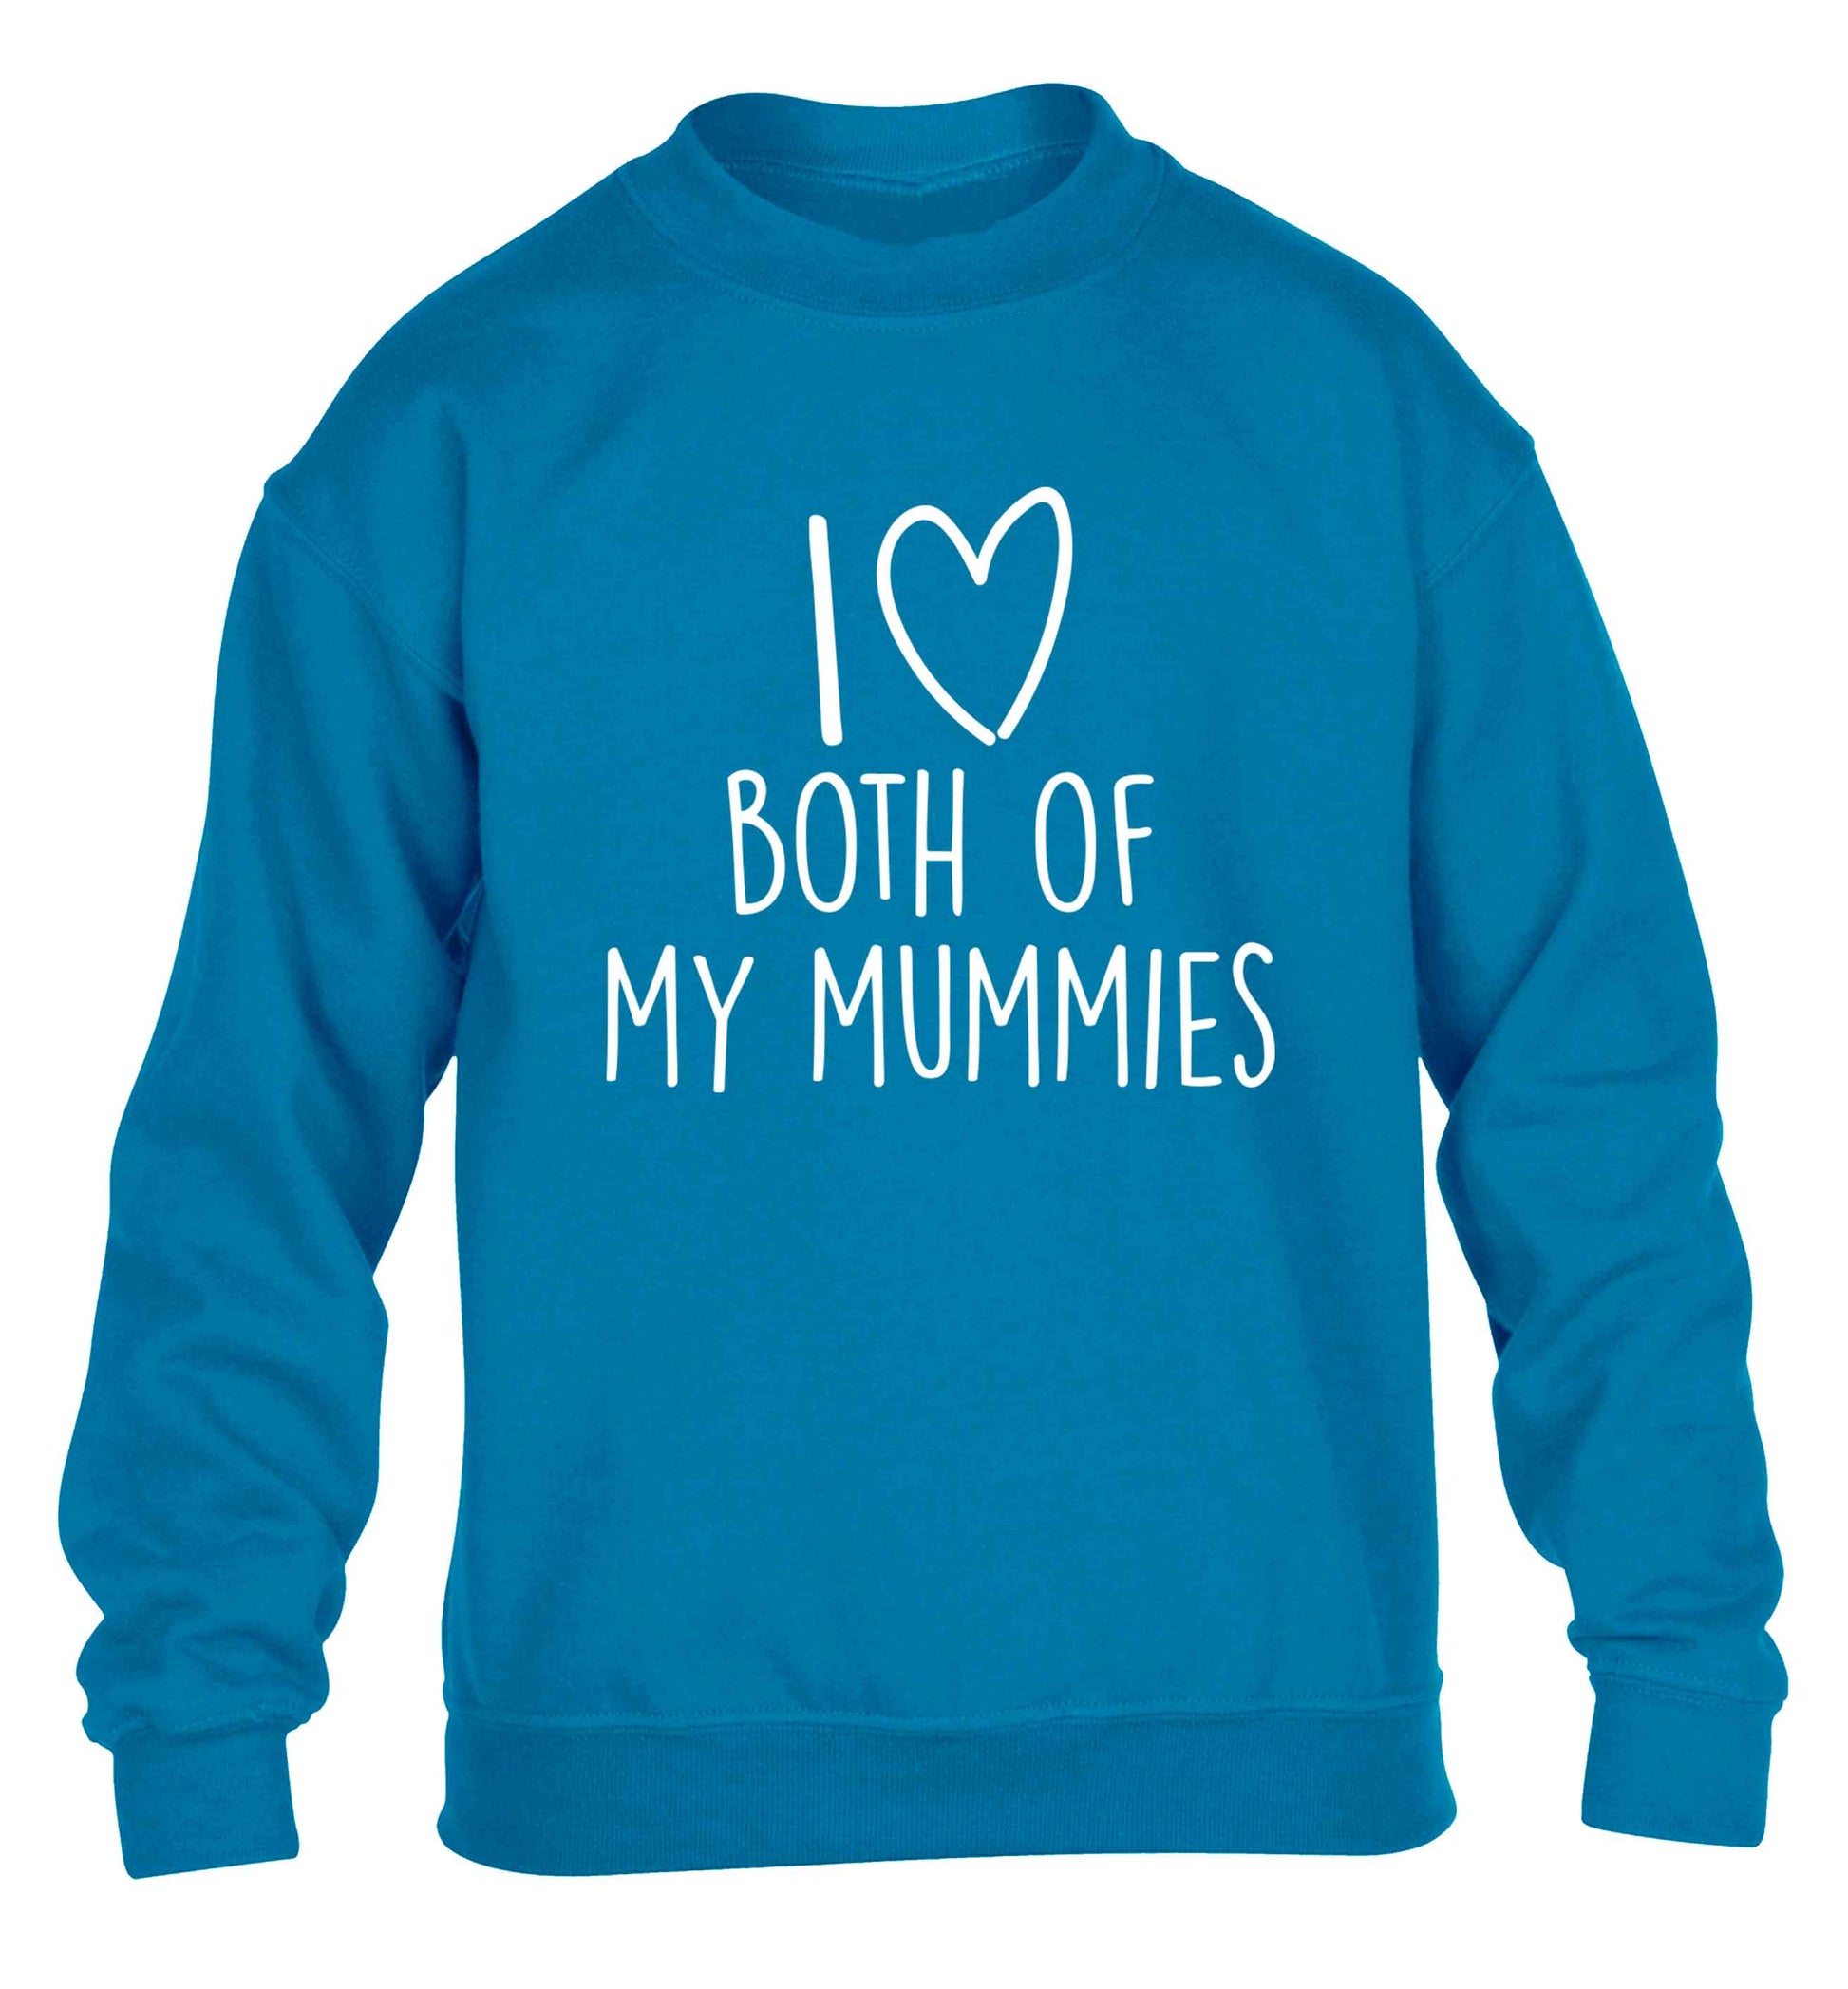 I love both of my mummies children's blue sweater 12-13 Years